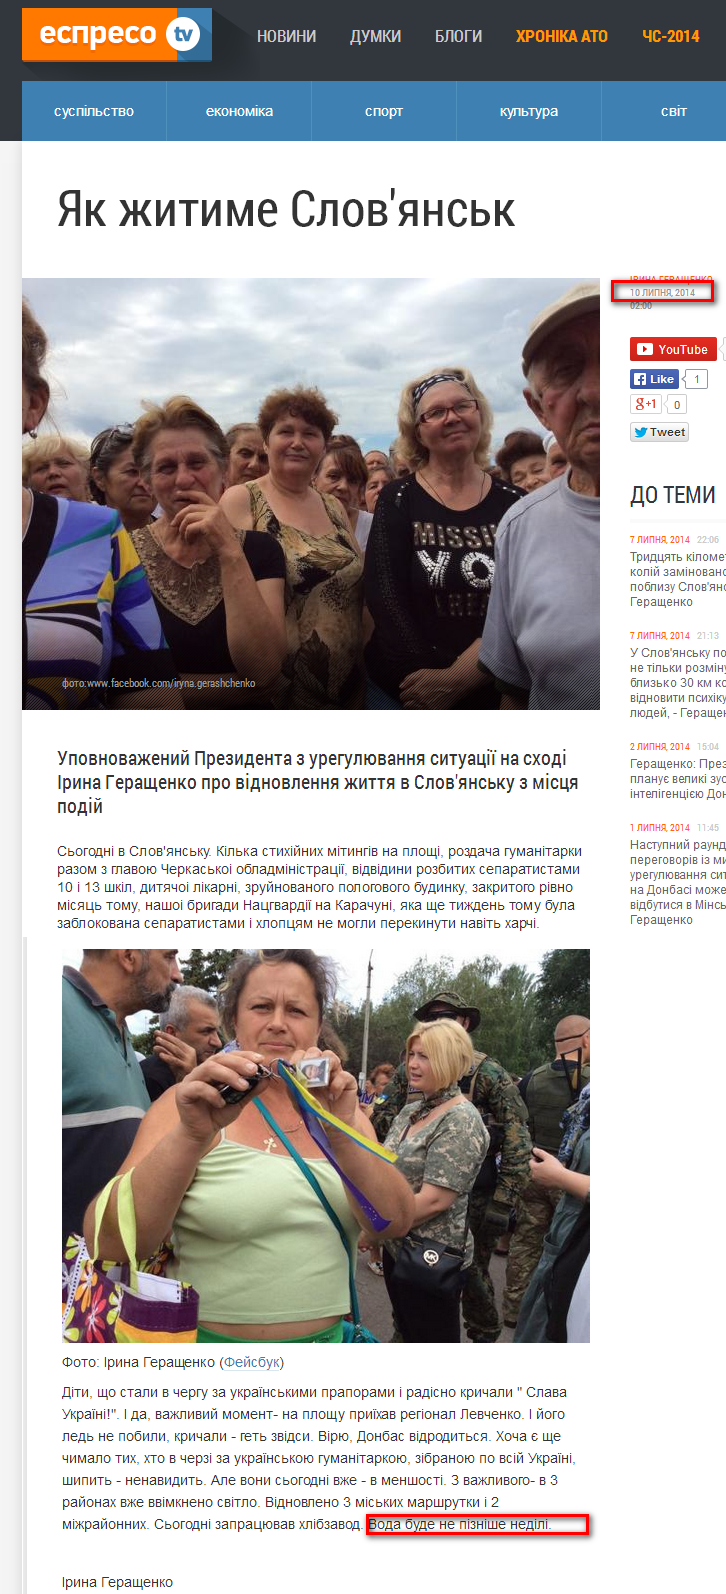 http://espreso.tv/article/2014/07/10/yak_zhytyme_slovyansk